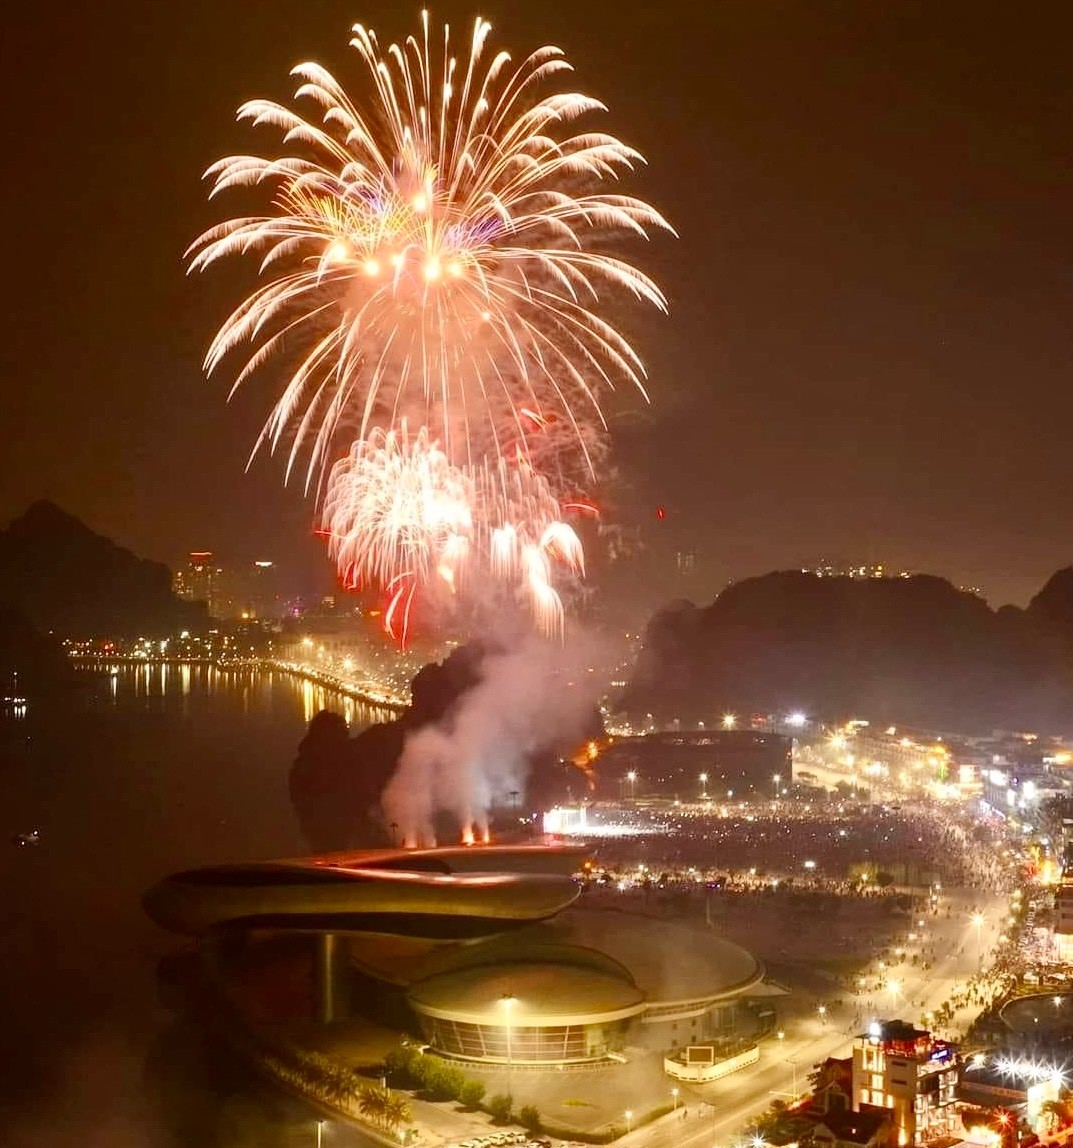 Chương trình Lễ Kỷ niệm 60 năm Ngày thành lập tỉnh Quảng Ninh khép lại bằng màn bắn pháo hoa tầm cao đặc sắc, rực rỡ sắc màu với thời lượng 15 phút trên biển cách khu vực sân khấu khoảng 300m.